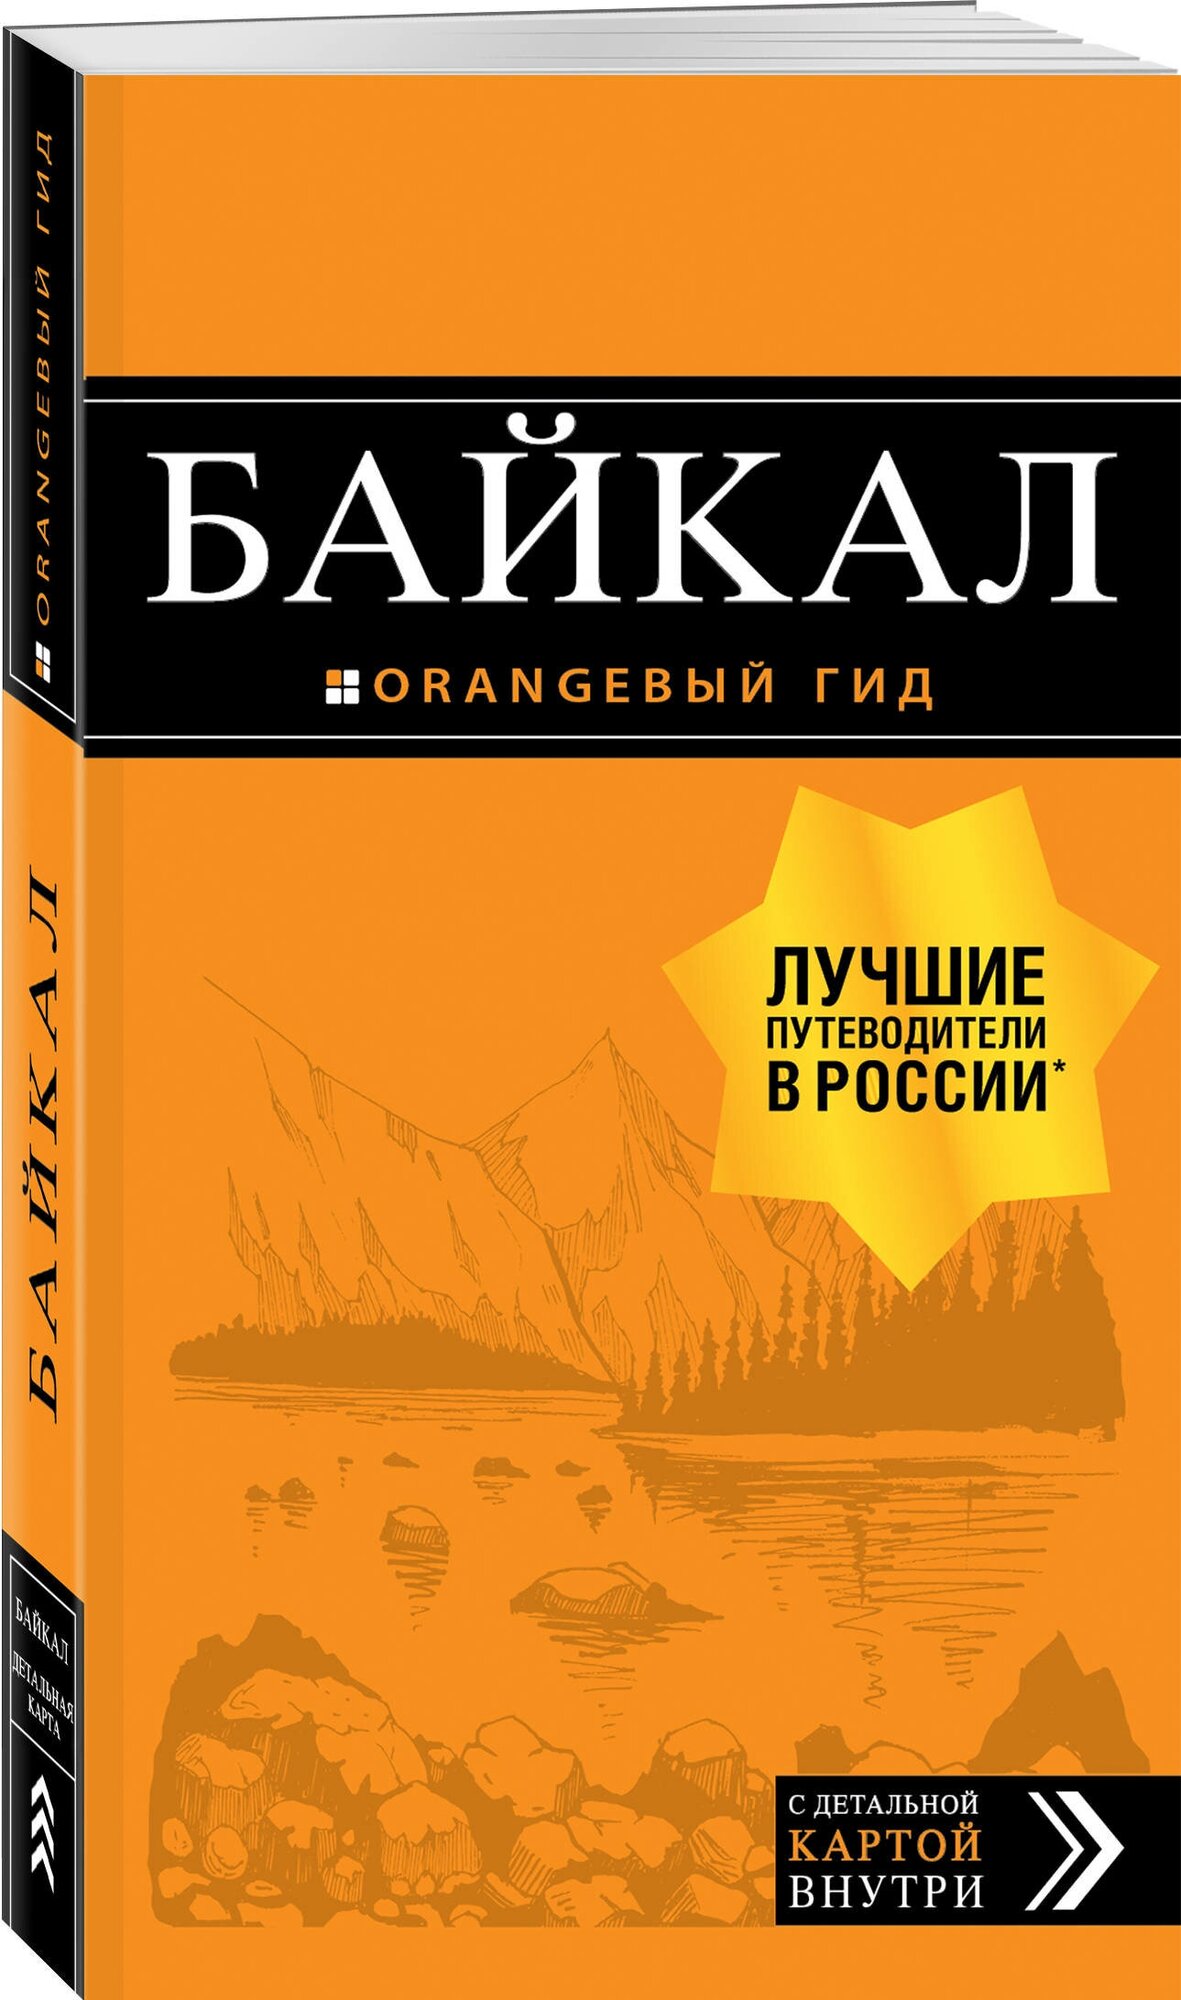 Шерхоева Л.С. "Байкал. 2-е изд., испр. и доп."